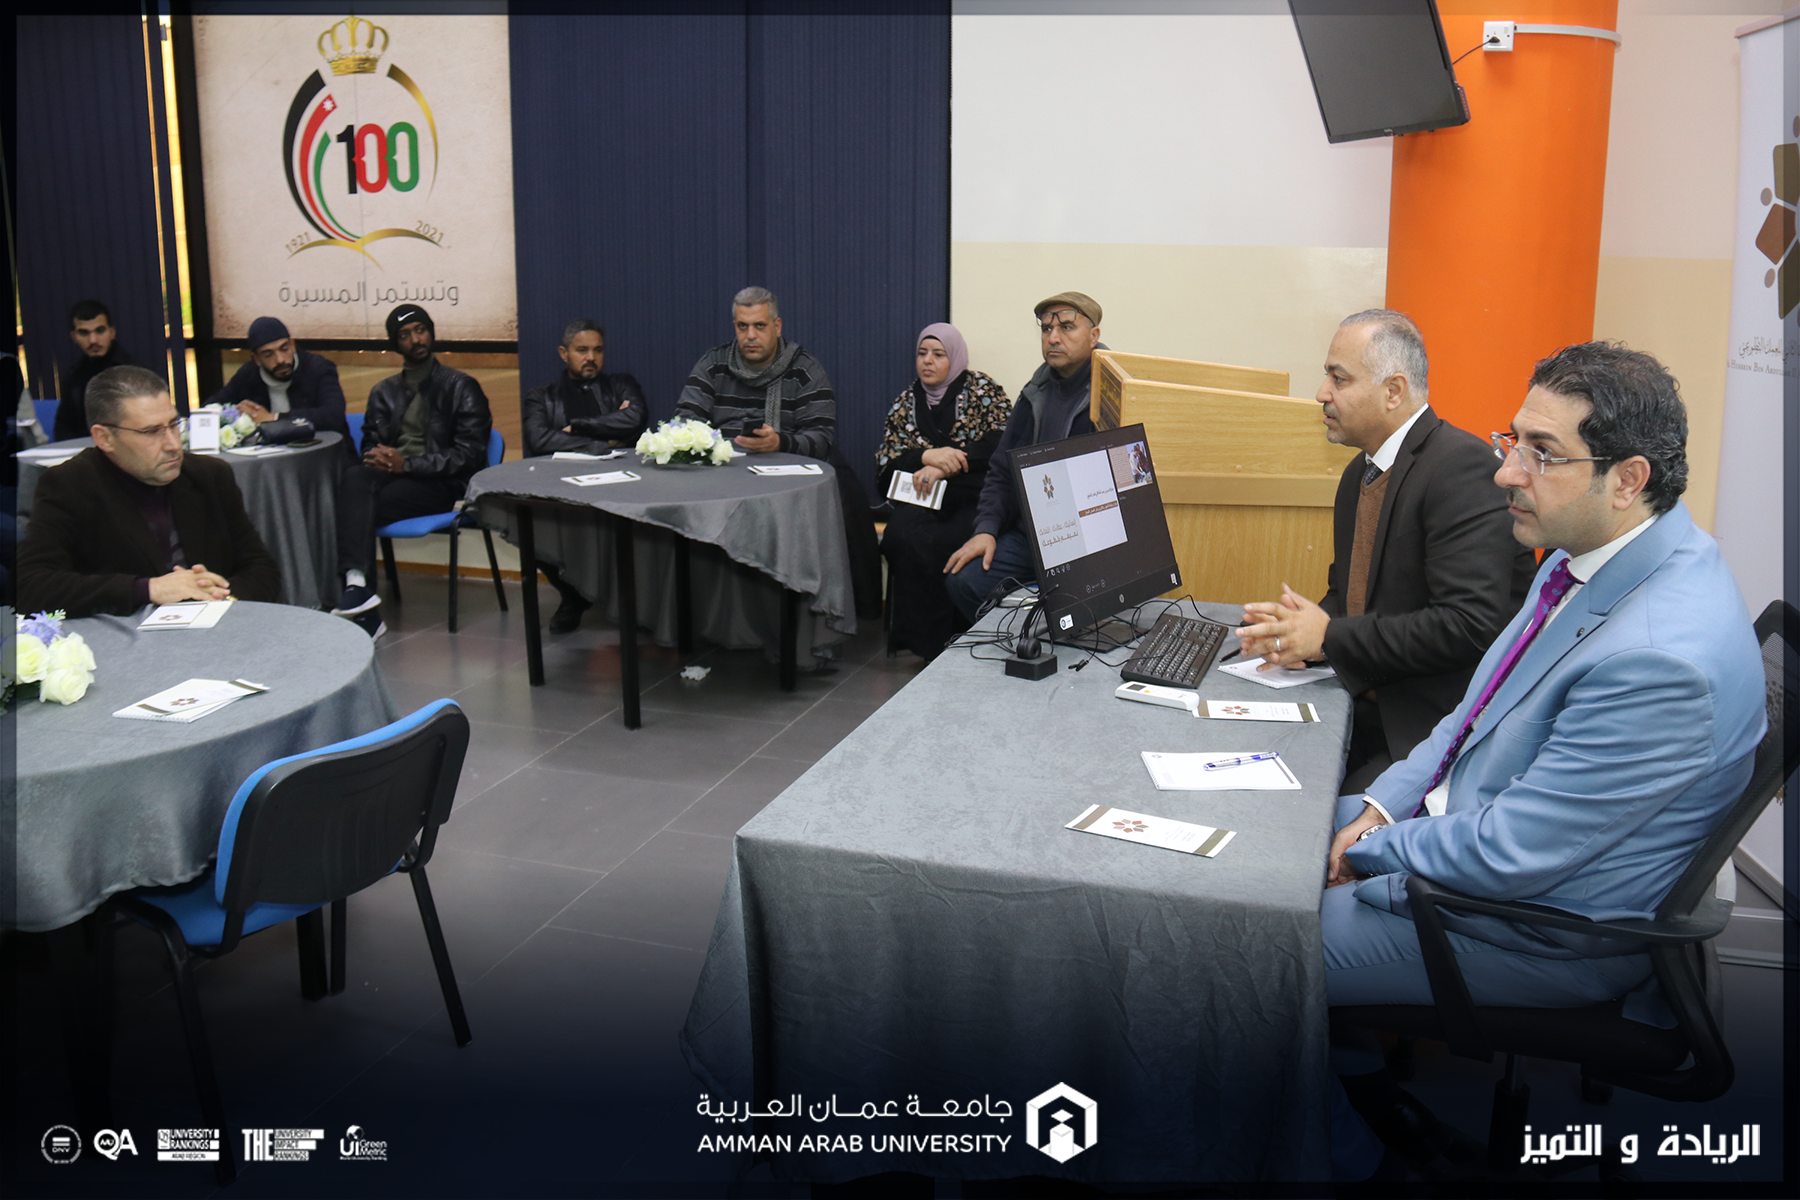 جلسة بـ"عمان العربية" للتعريف بجائزة الحسين بن عبد الله الثاني للعمل التطوعي1